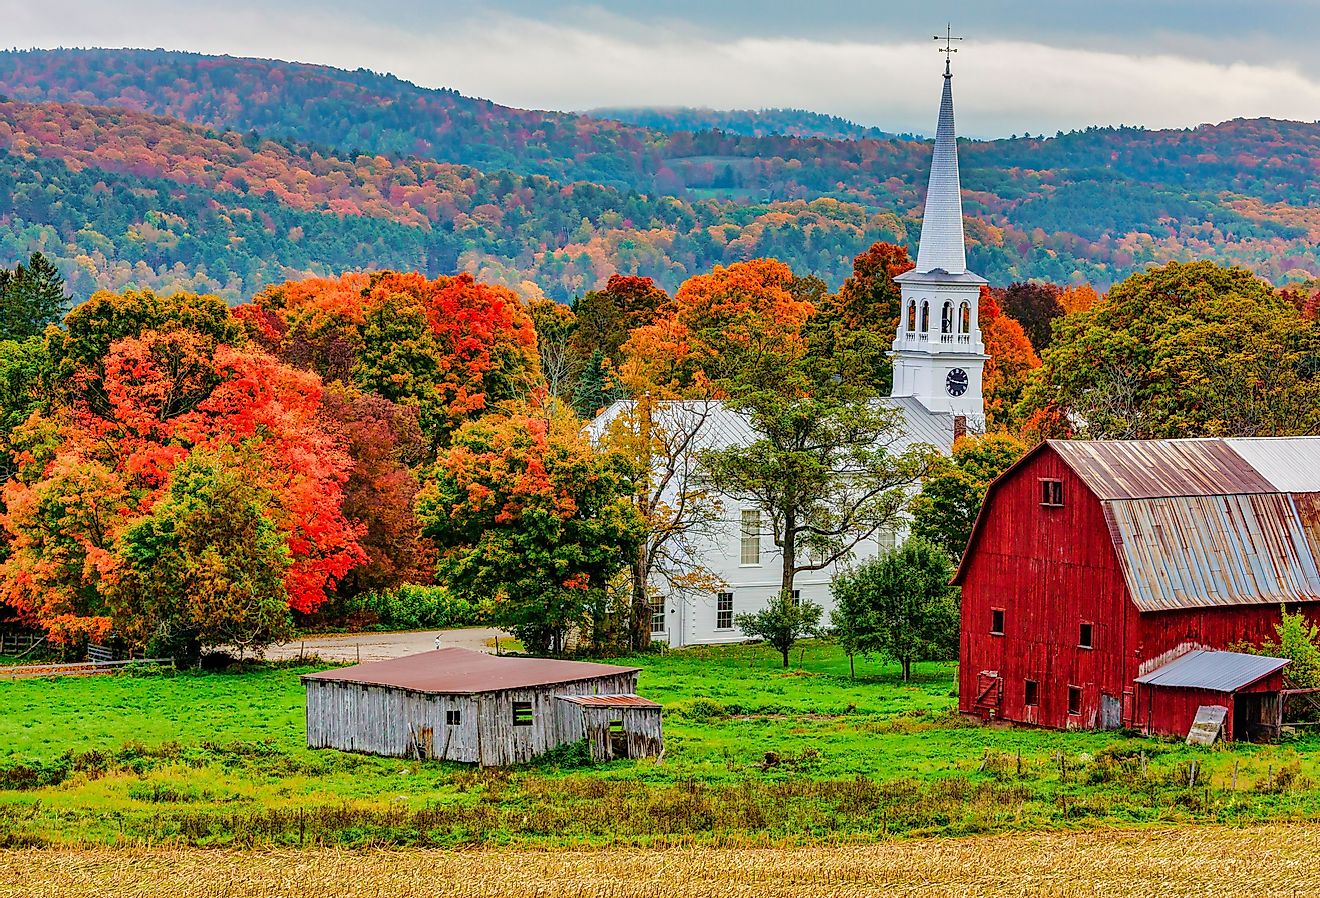 Woodstock, Vermont. Image credit MindStorm via Shutterstock